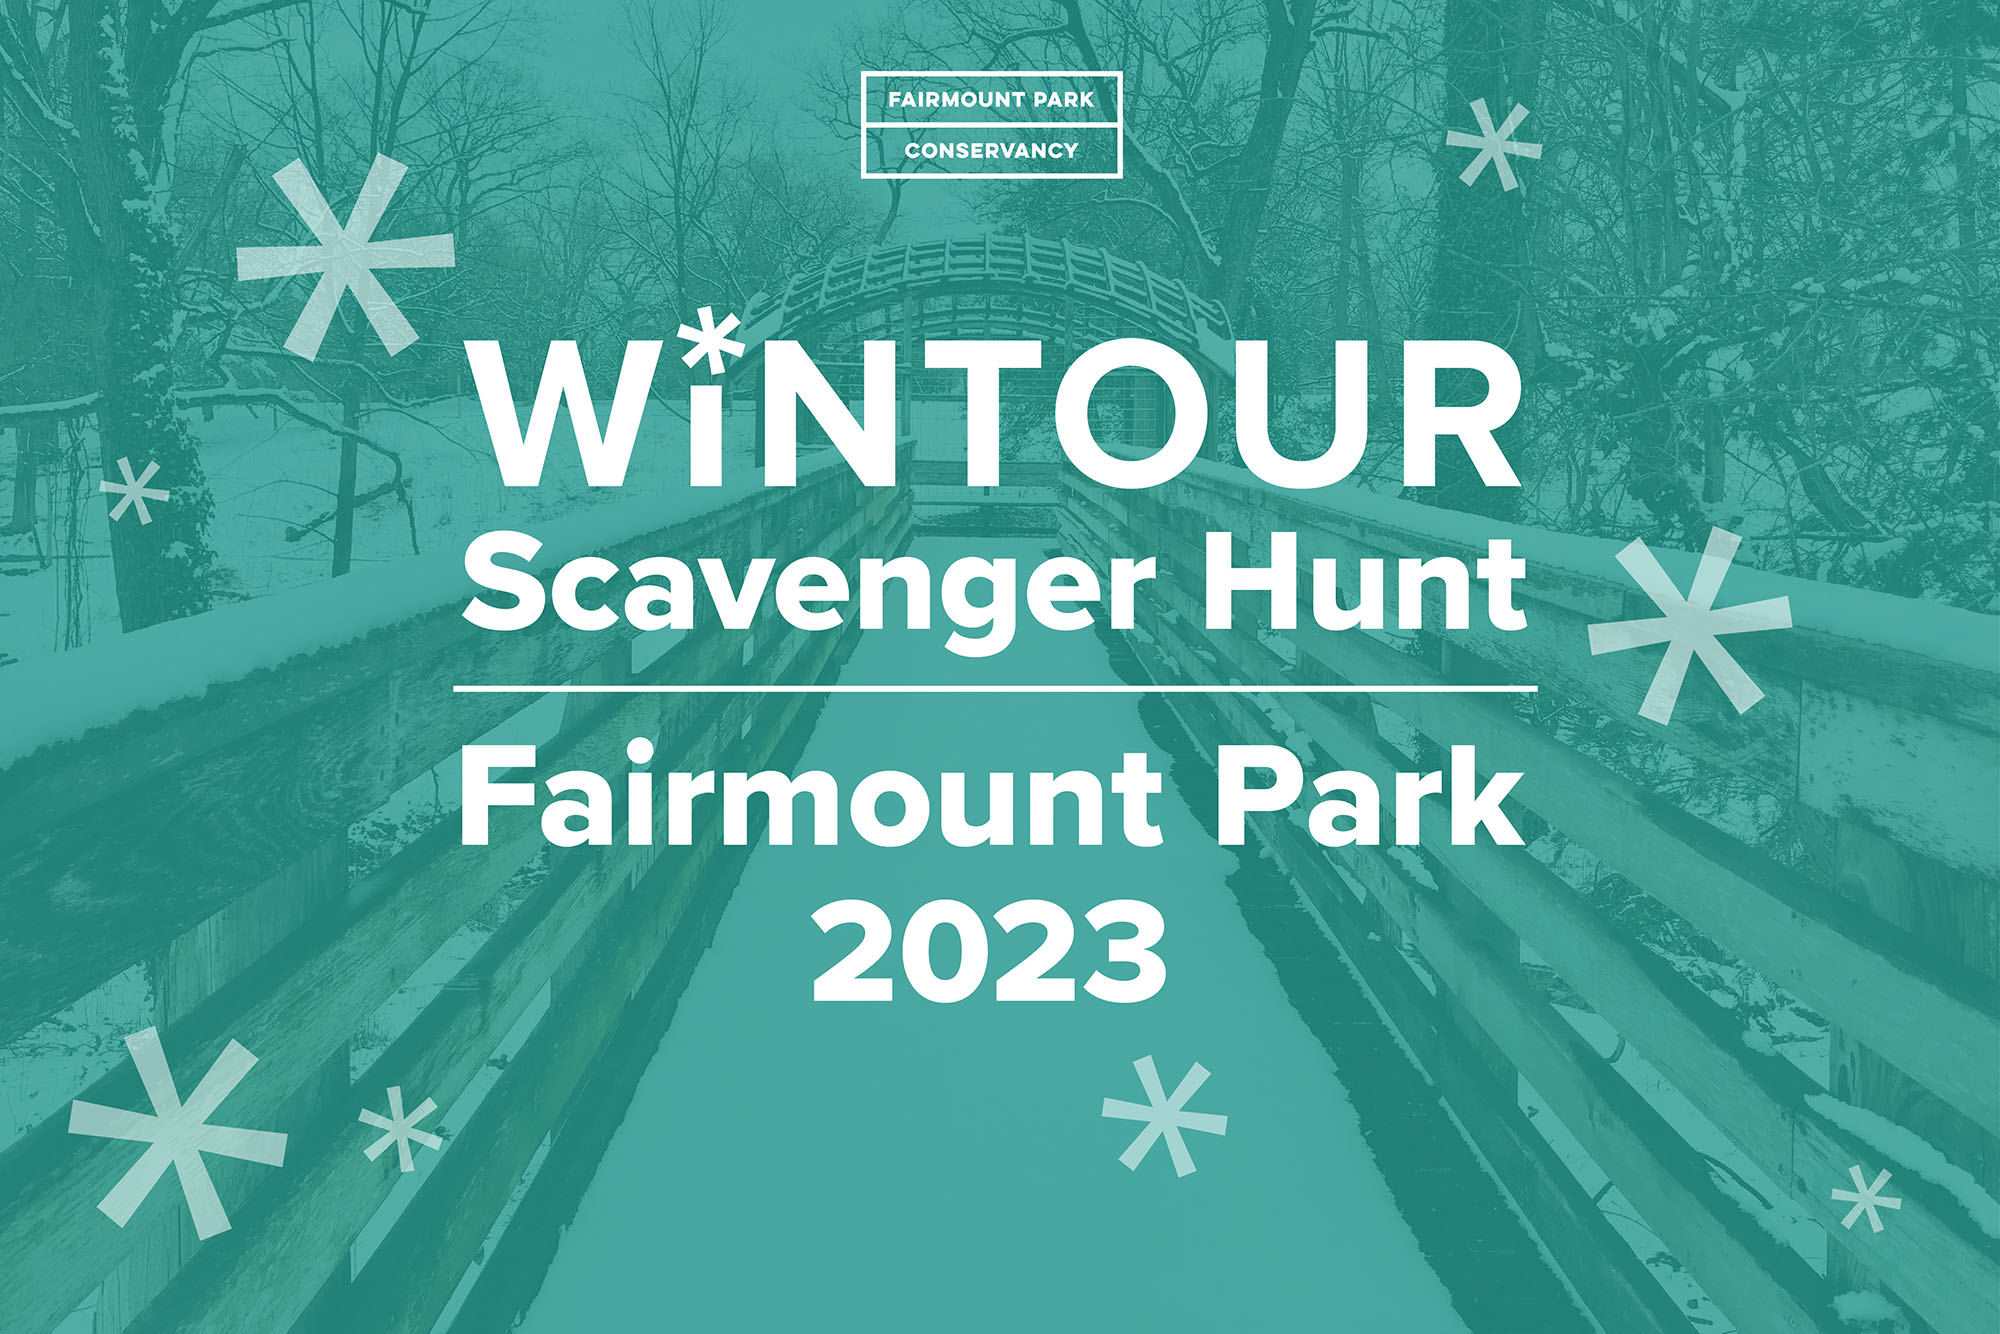 Wintour Scavenger Hunt Returns To Fairmount Park Fairmount Park Conservancy